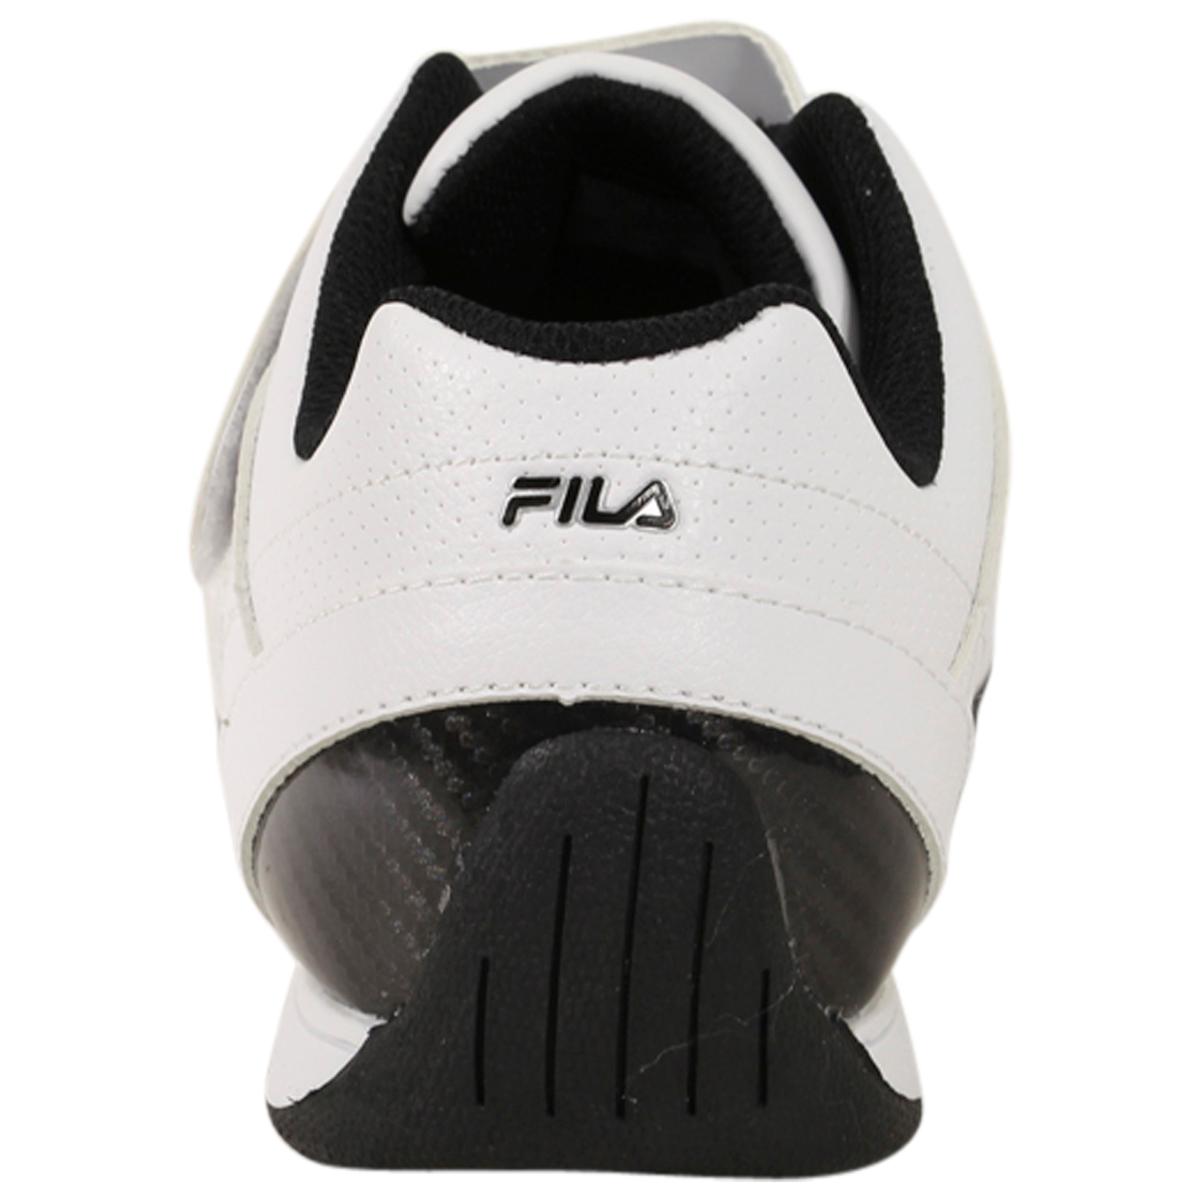 Fila Men's Mach T Motorsport Sneakers Shoes